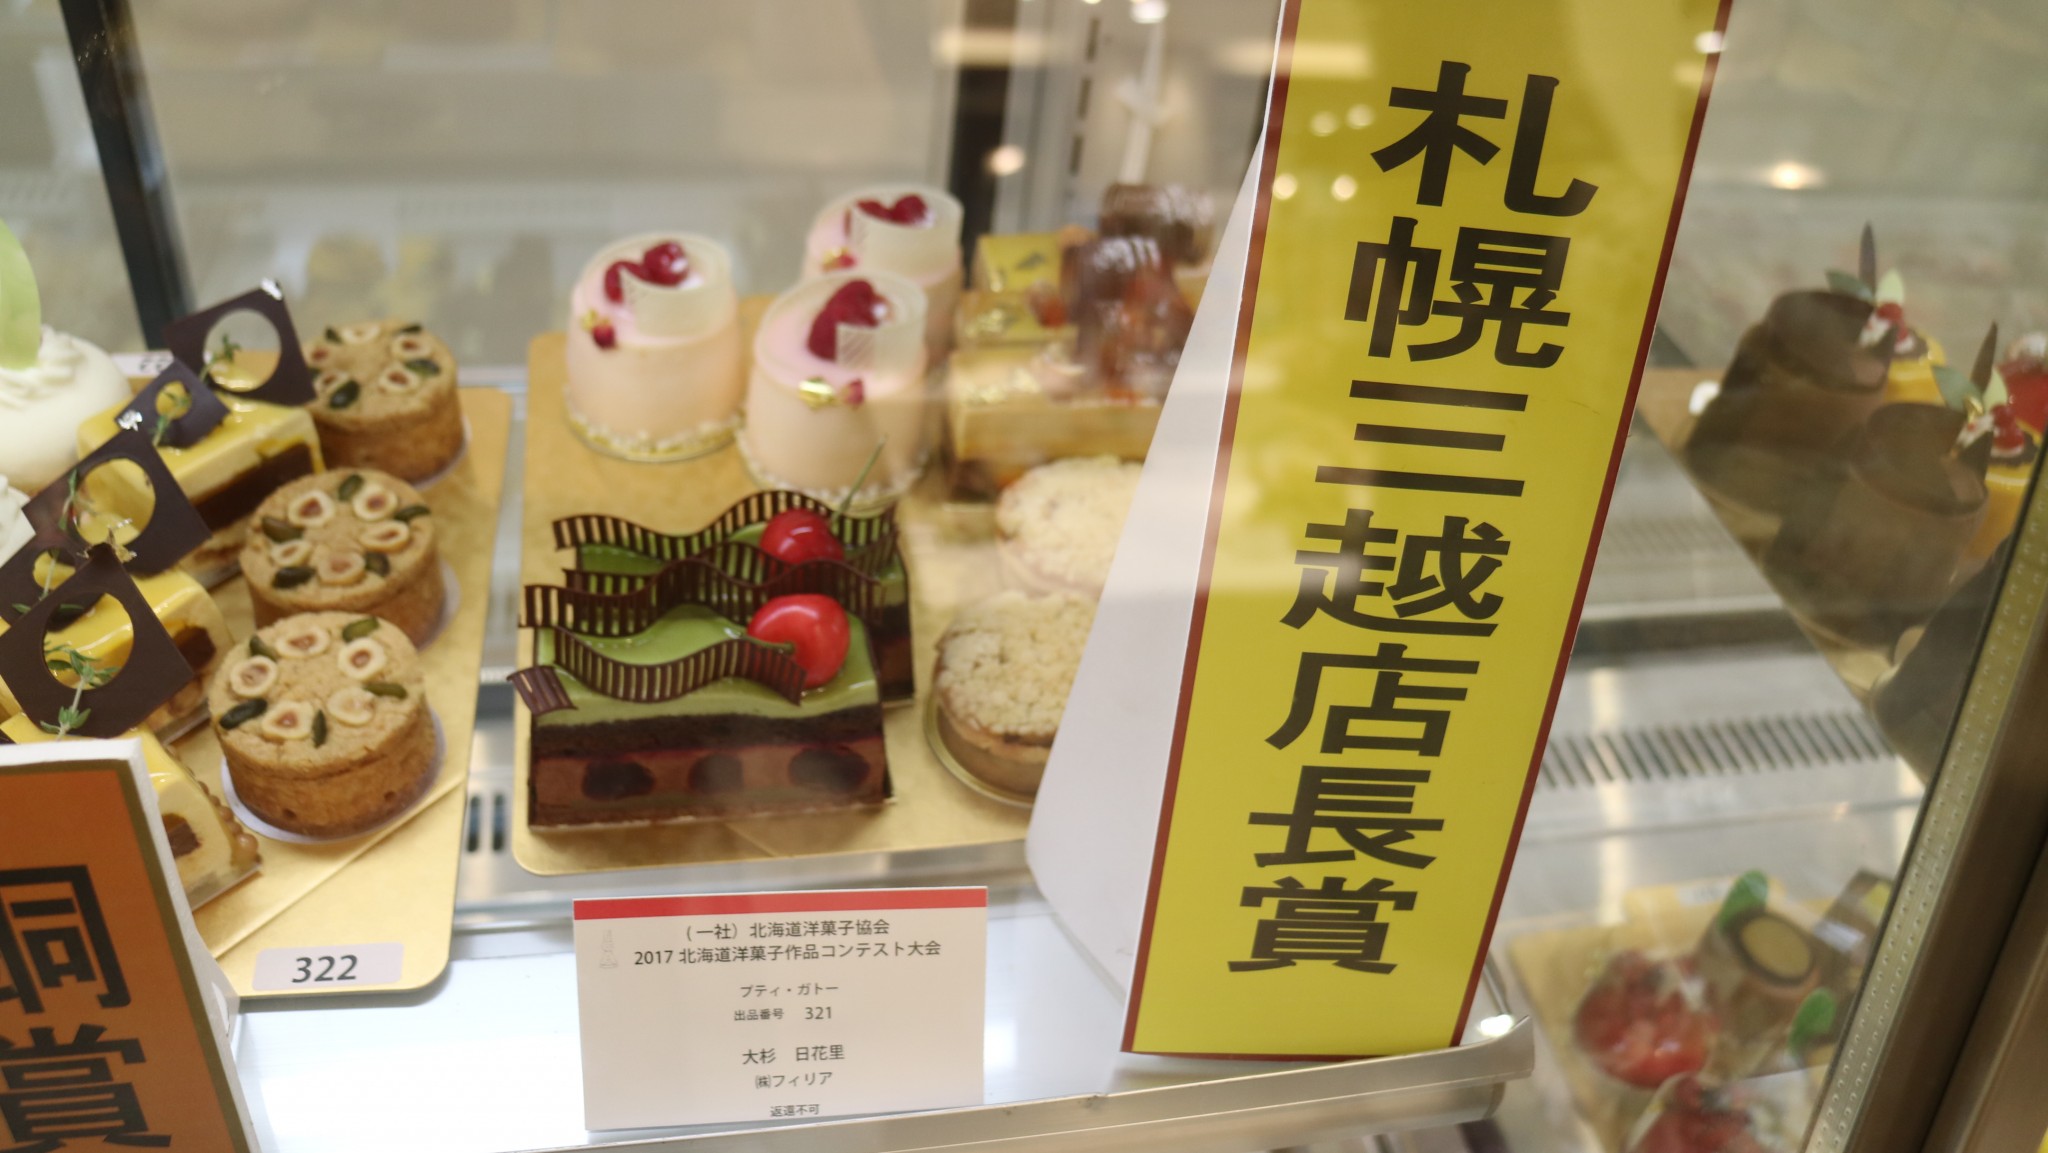 パティシエ科 17北海道洋菓子作品コンテストの結果発表 札幌ベルエポック製菓調理ウェディング専門学校 パティシエ シェフ カフェ ウェディング業界のプロを目指す